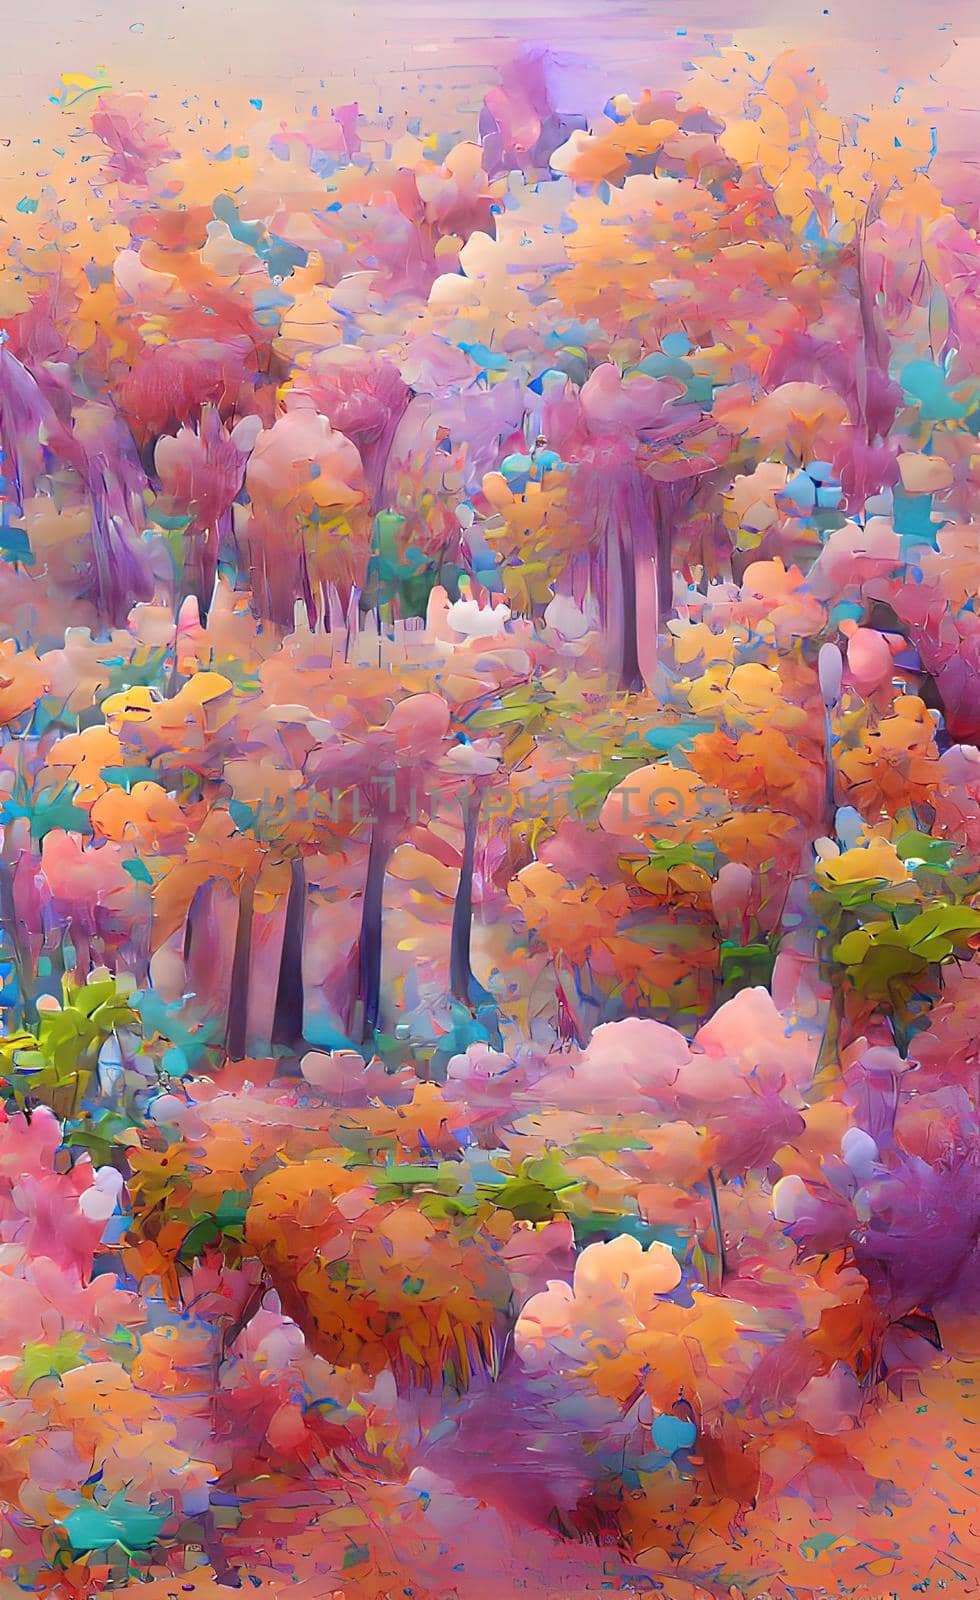 Autumn season and trees in nature by yilmazsavaskandag